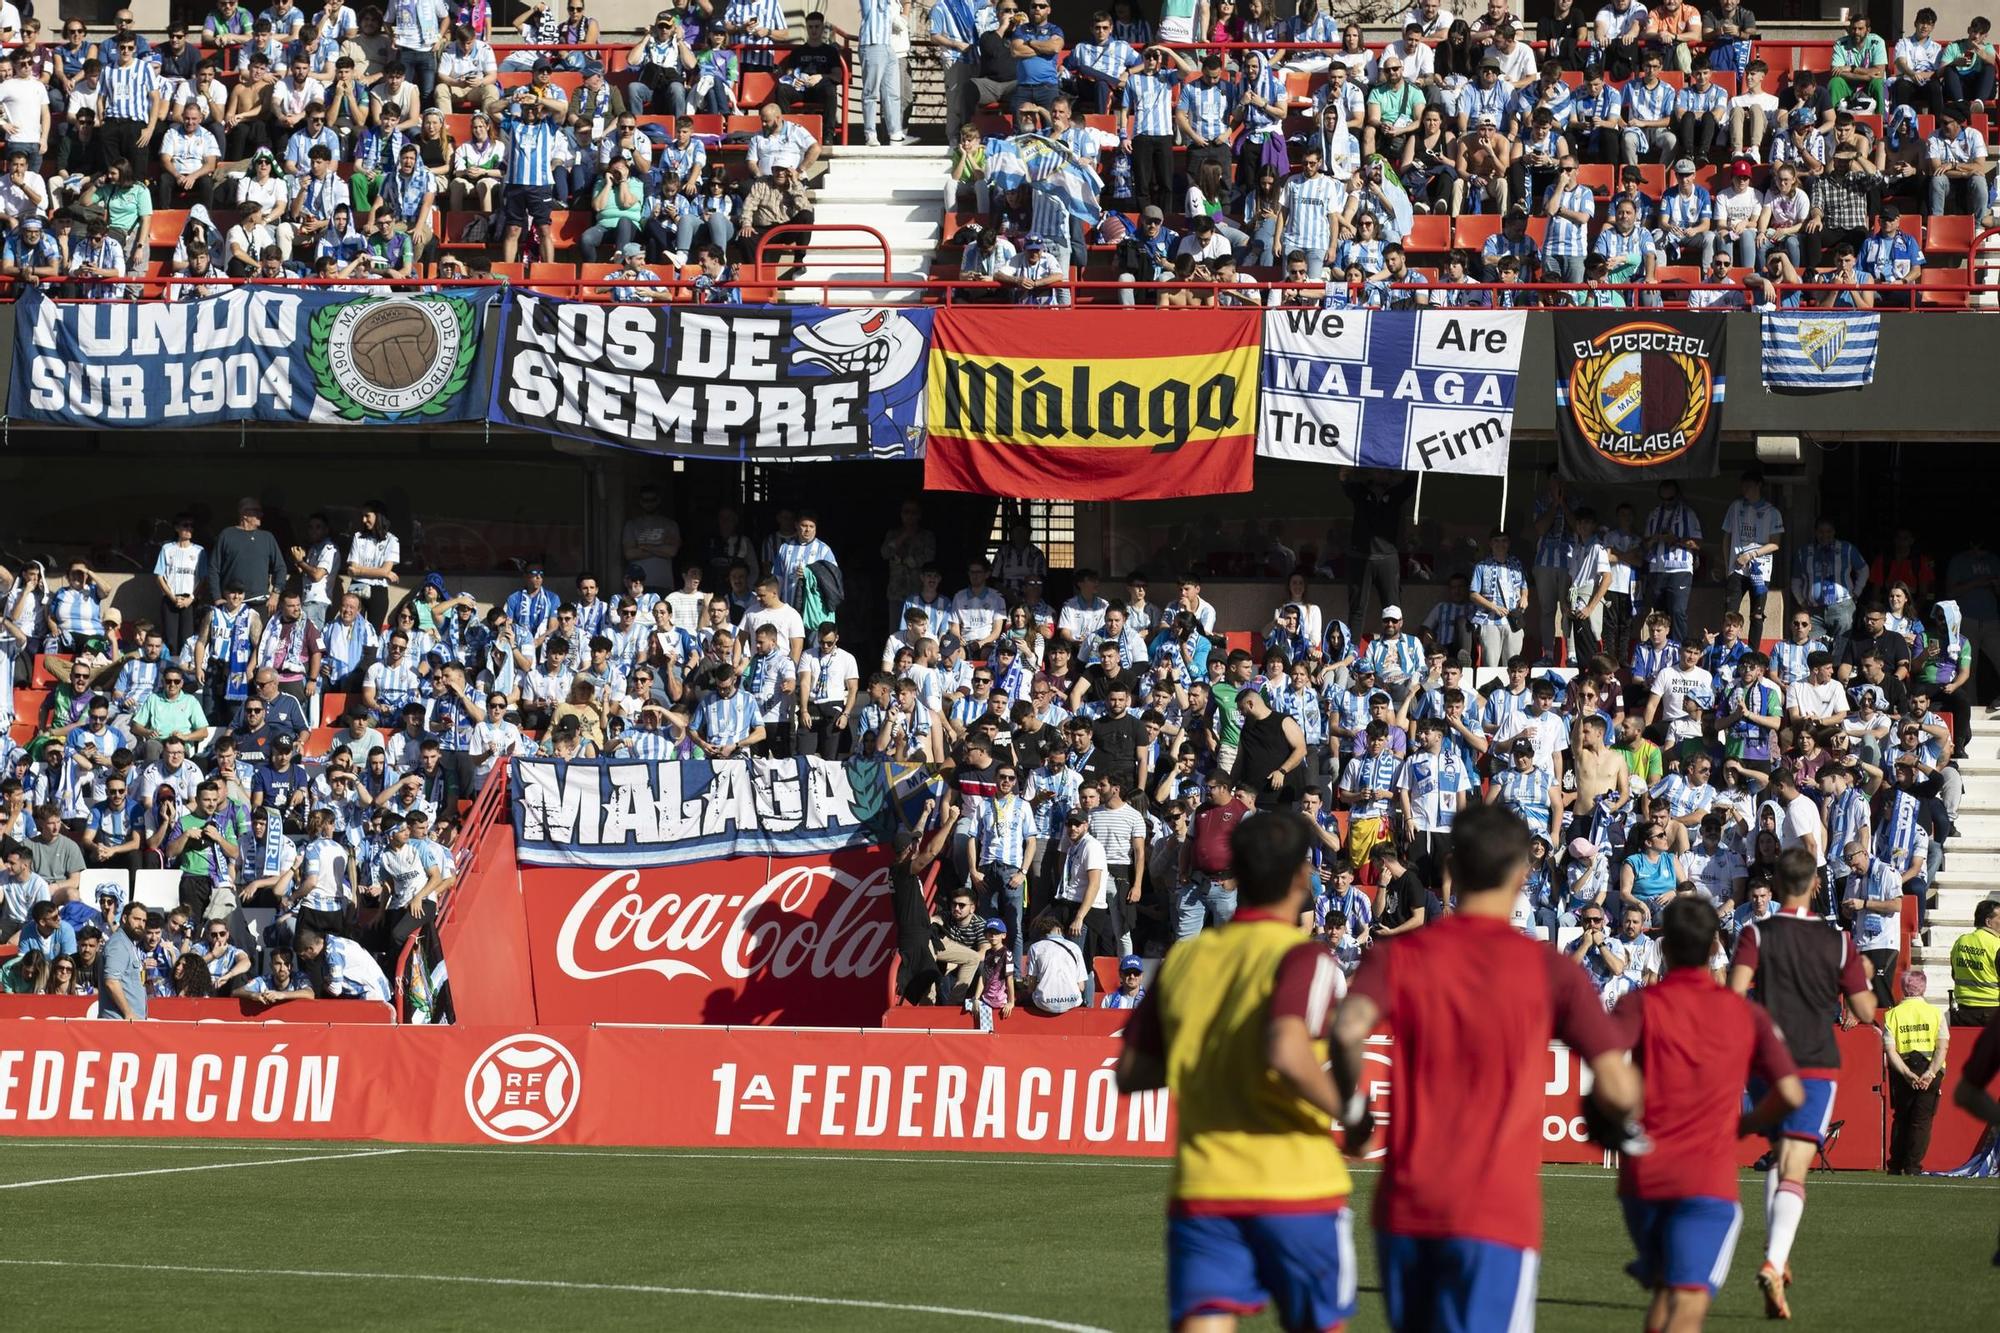 Primera RFEF: Recreativo Granada - Málaga CF